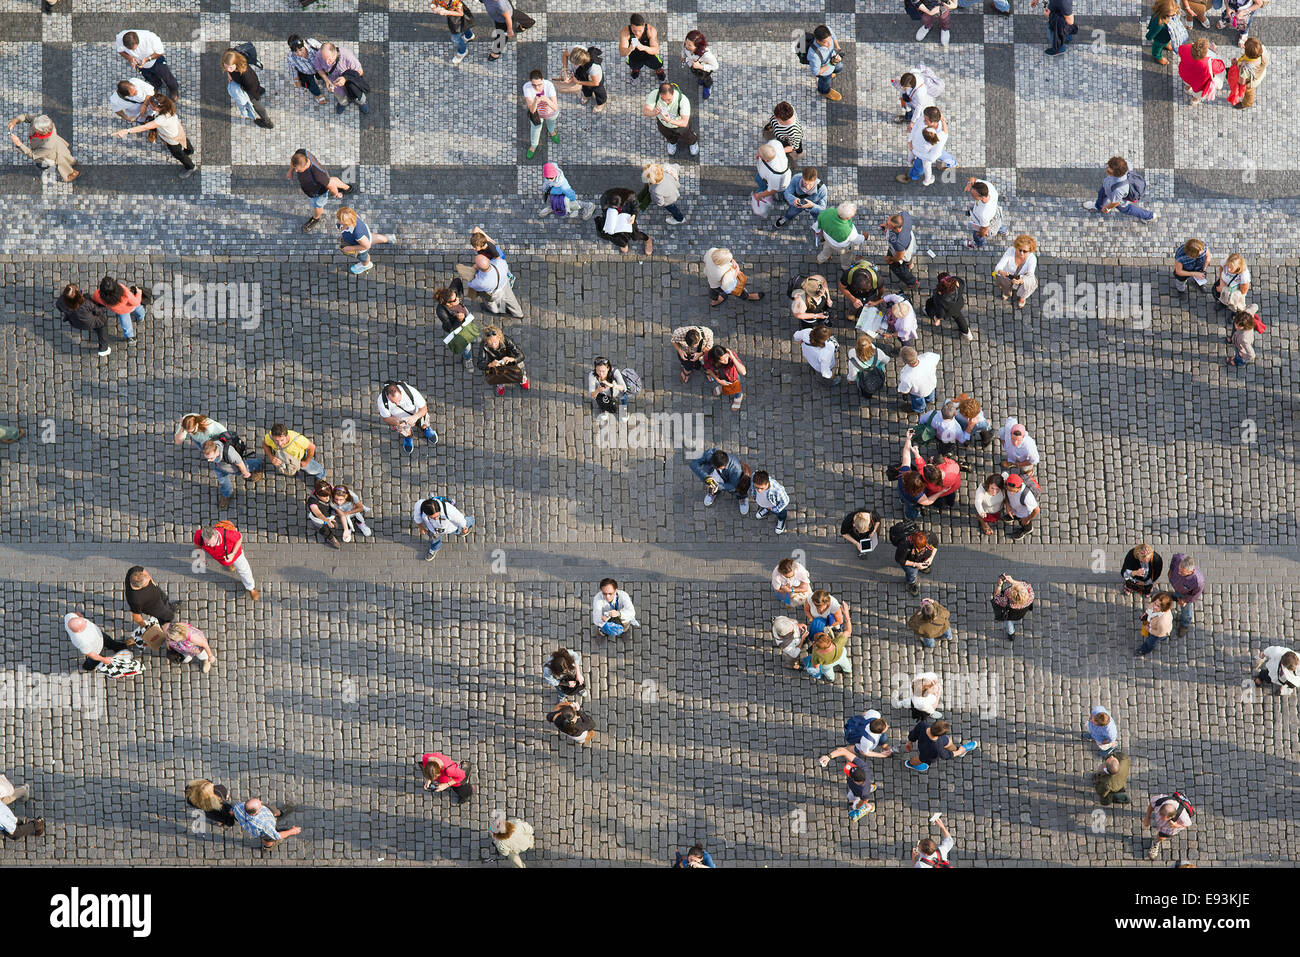 Prag, Tschechien - 9. September 2014: große Gruppe von Touristen in Prag zentrale Quadrat nach oben zum Turm des alten Rathauses. Stockfoto